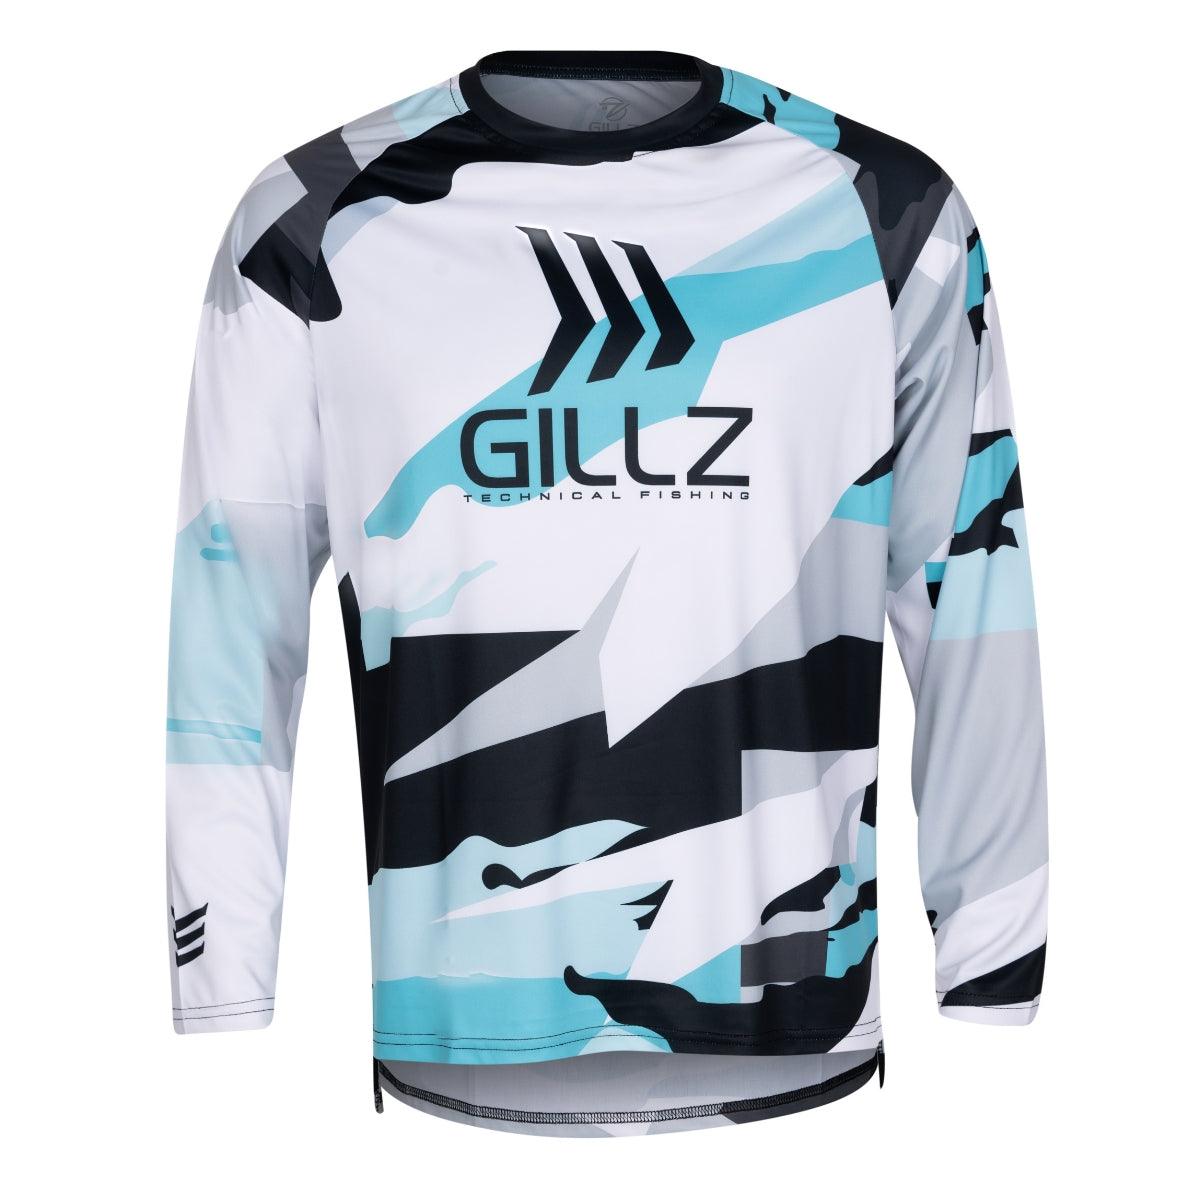 Gillz - Contender Long Sleeve Shirt UV RPM, Aruba Blue (All Sizes) - Technical Outdoor Gear